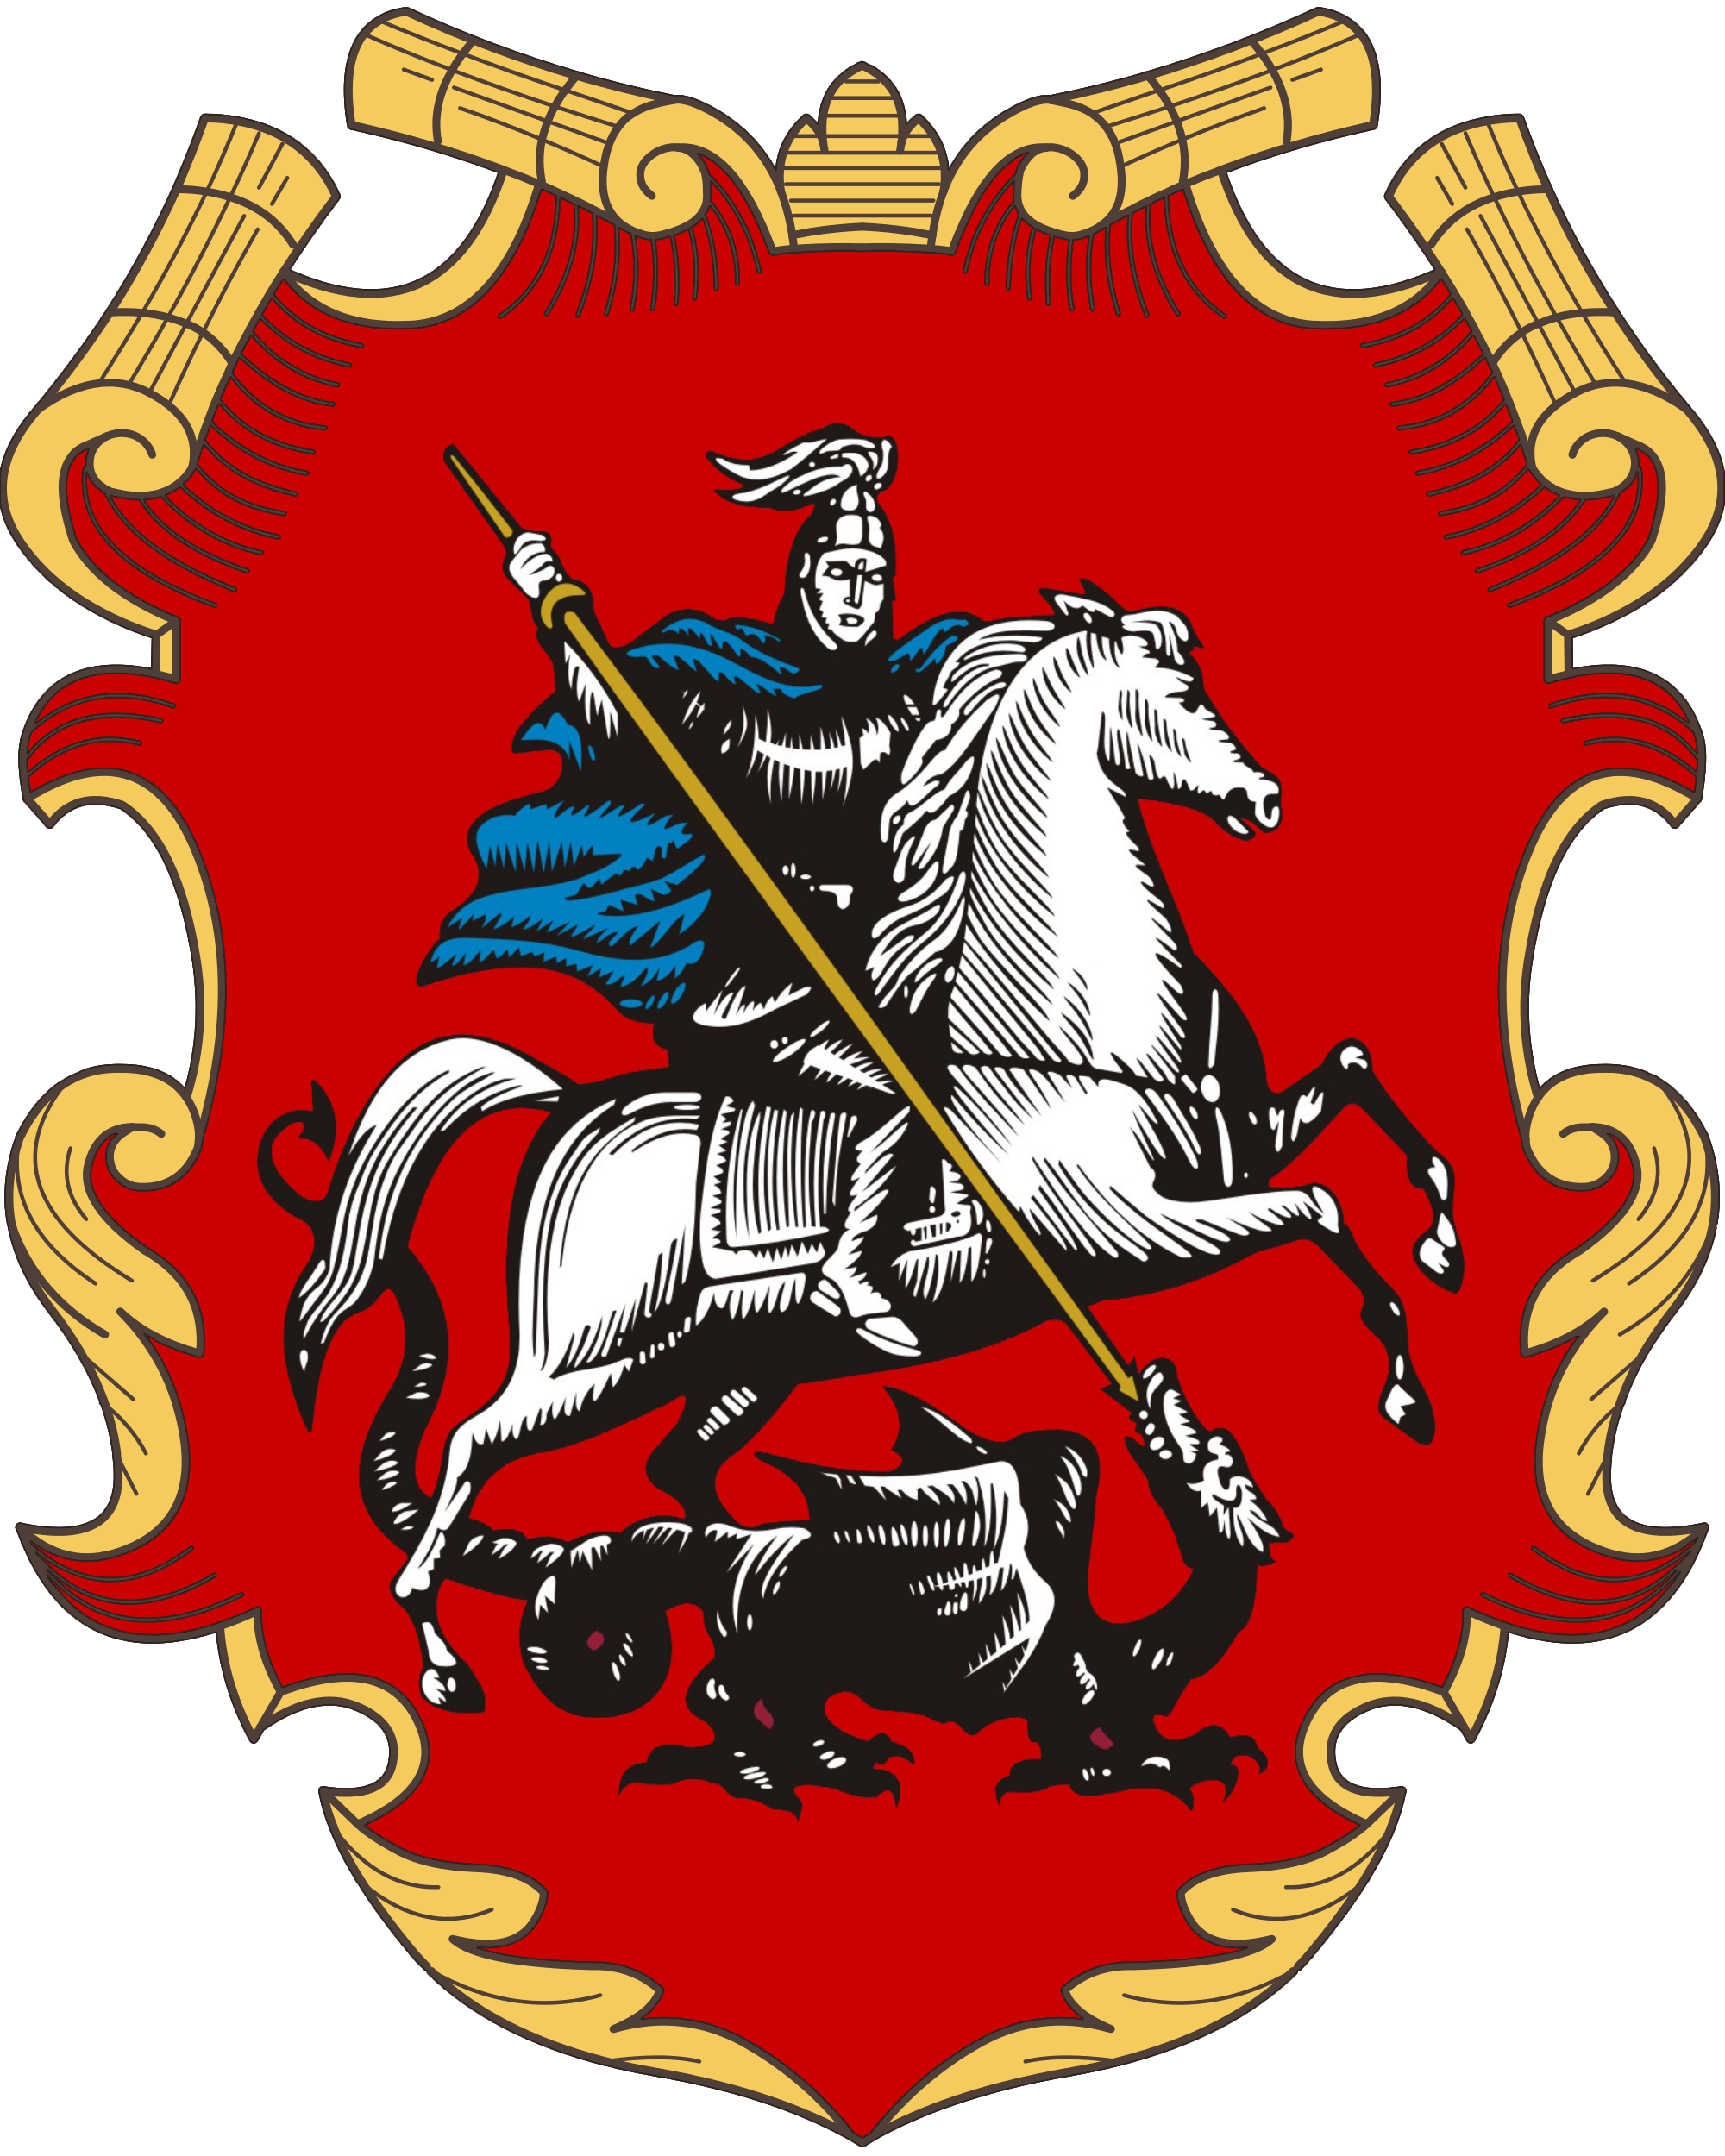 Логотип московской области